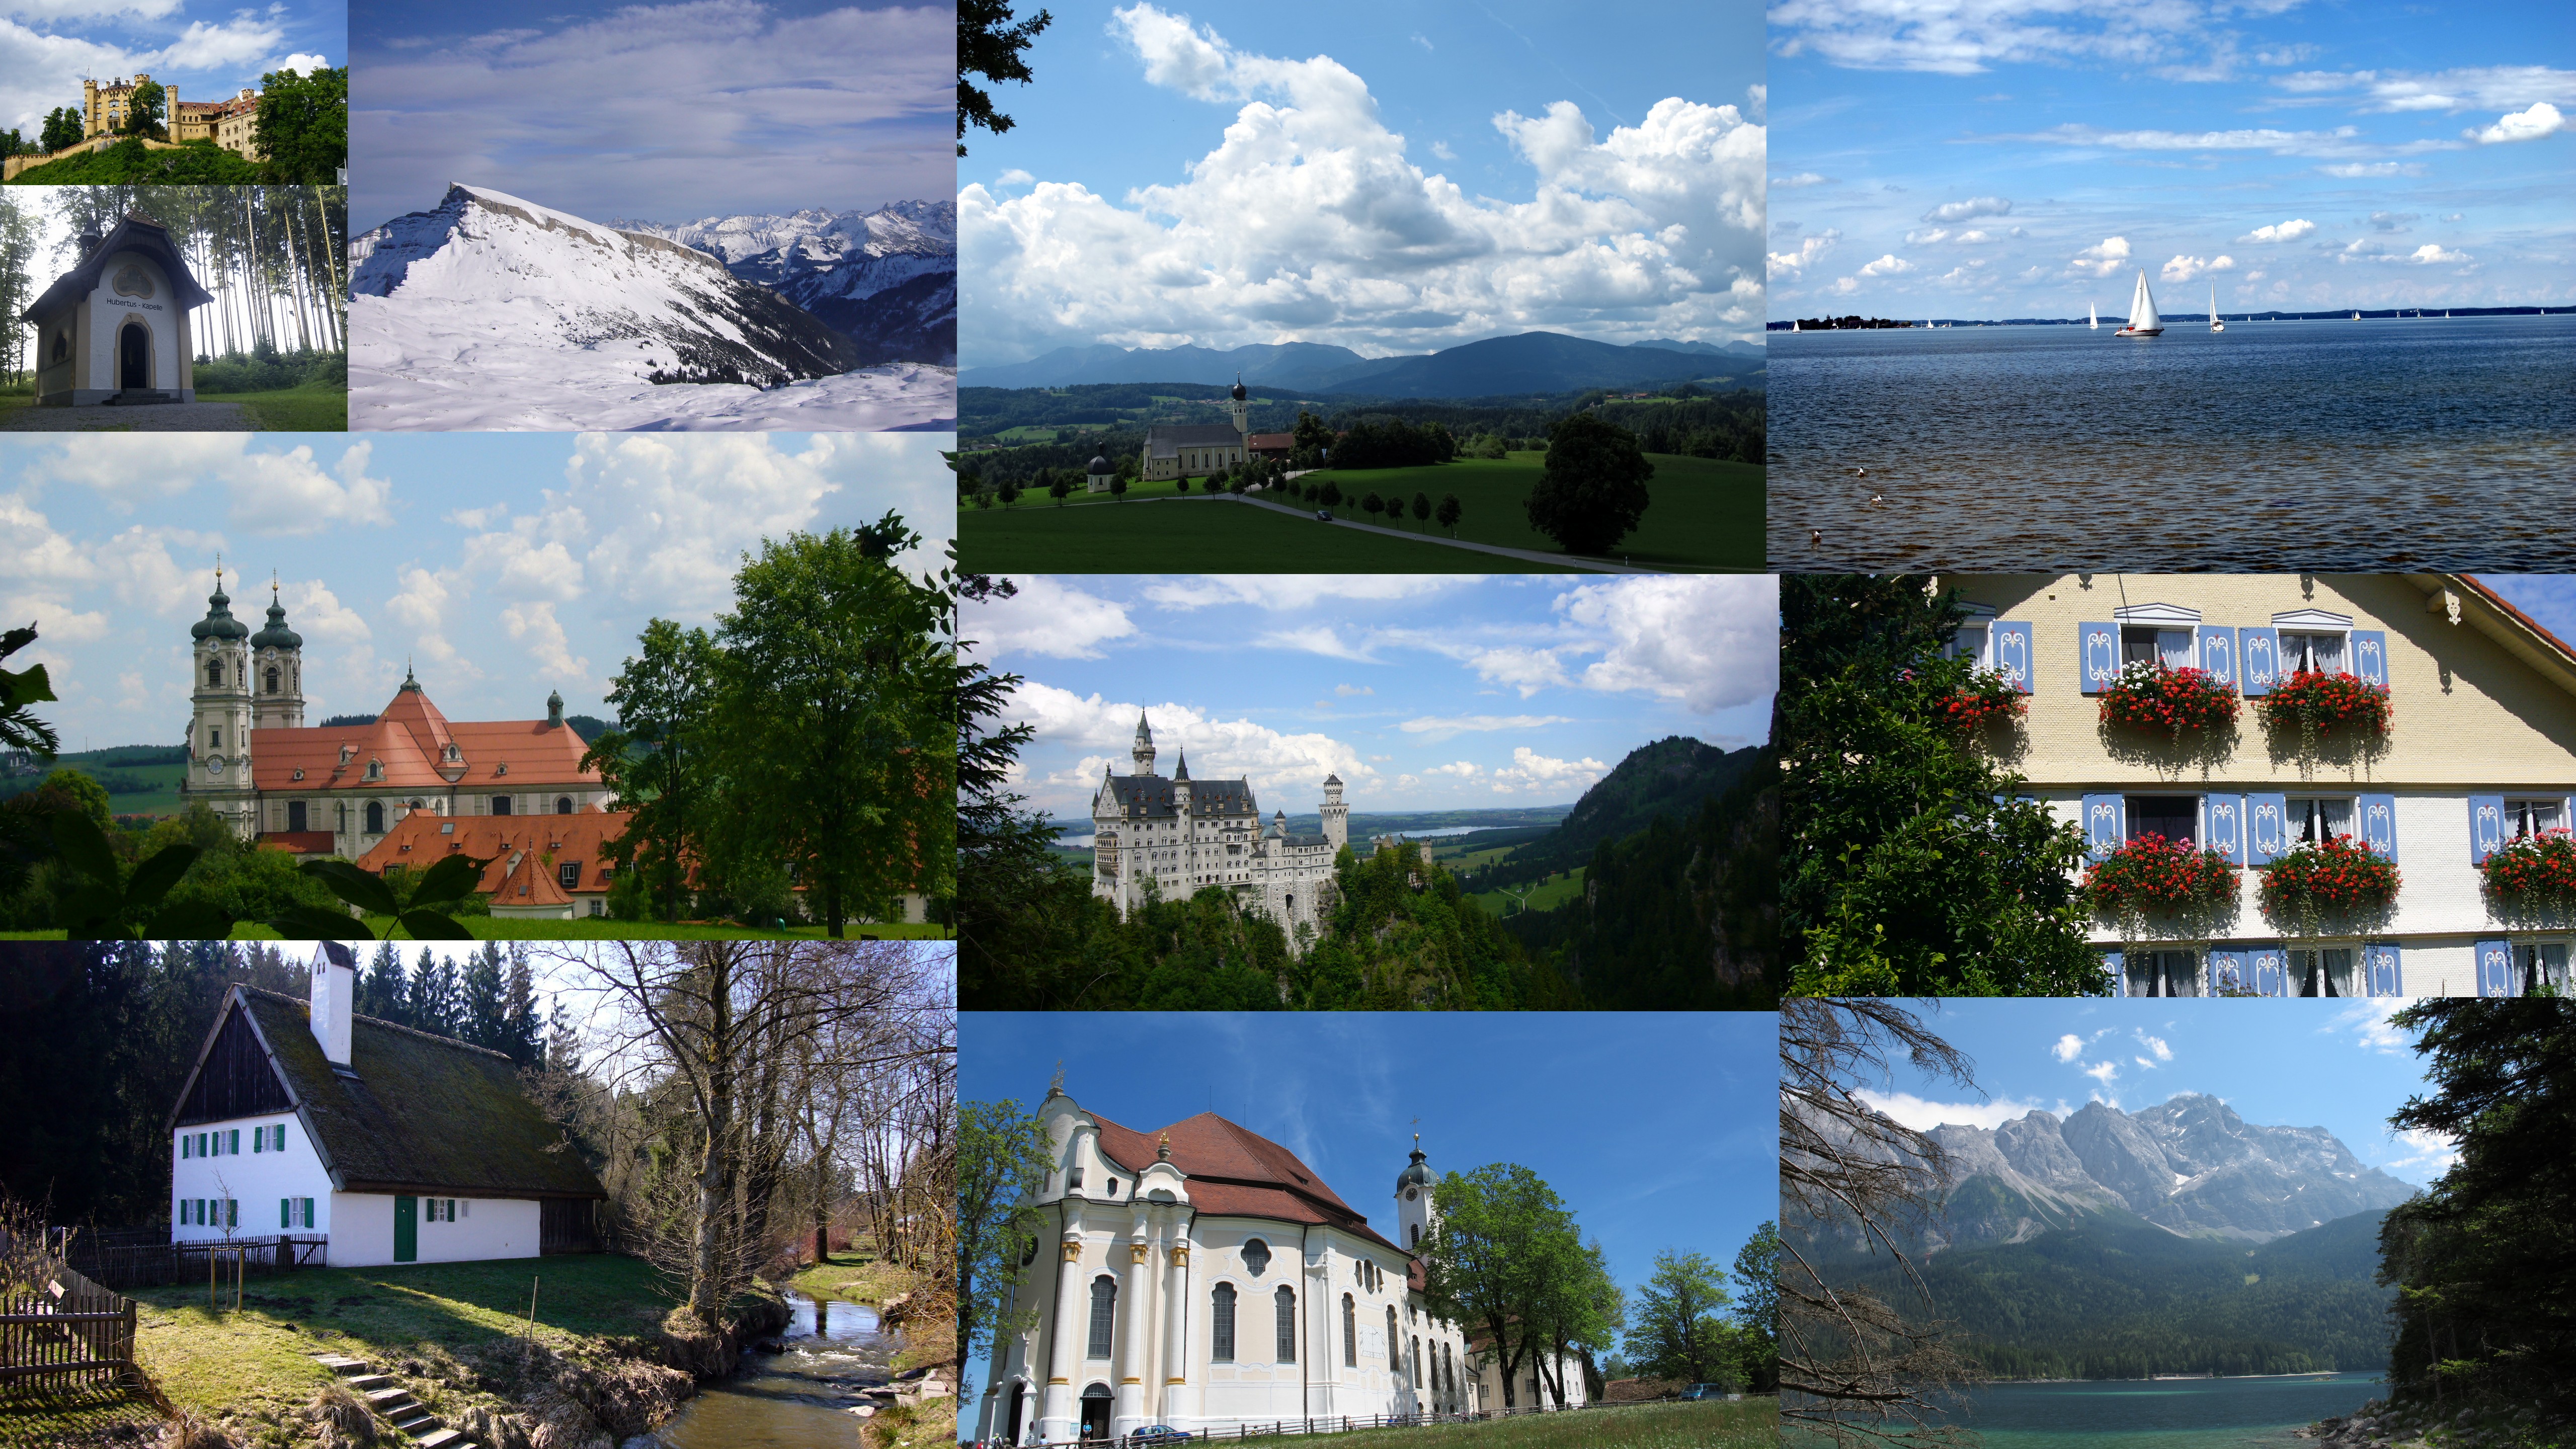 Bayern- so ein schönes Land! Berge, Seen, Schlösser, Kirchen...